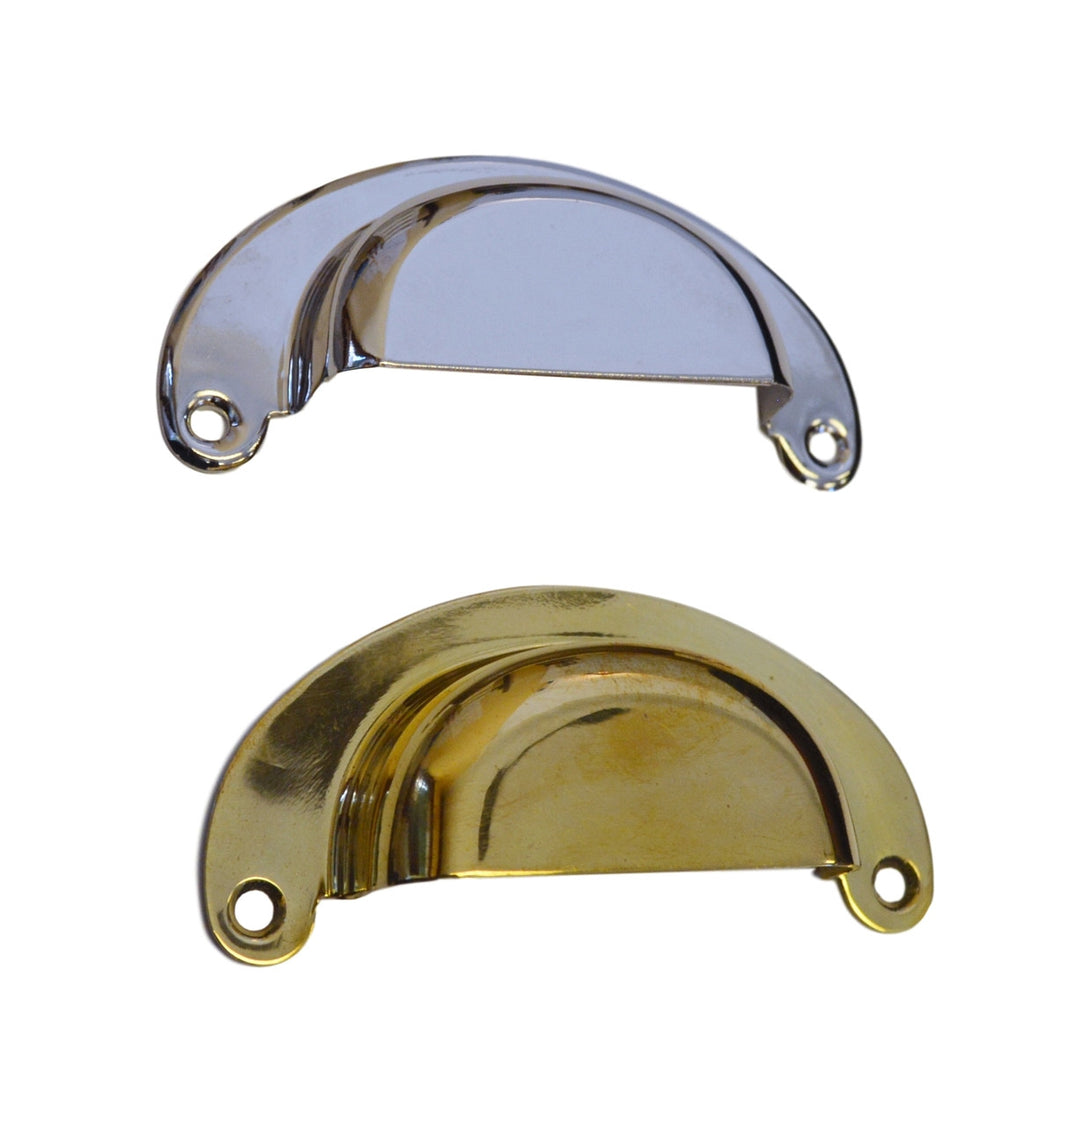 Hoosier Style Bin Pull Cabinet Hardware Restoration Supplies Brass  